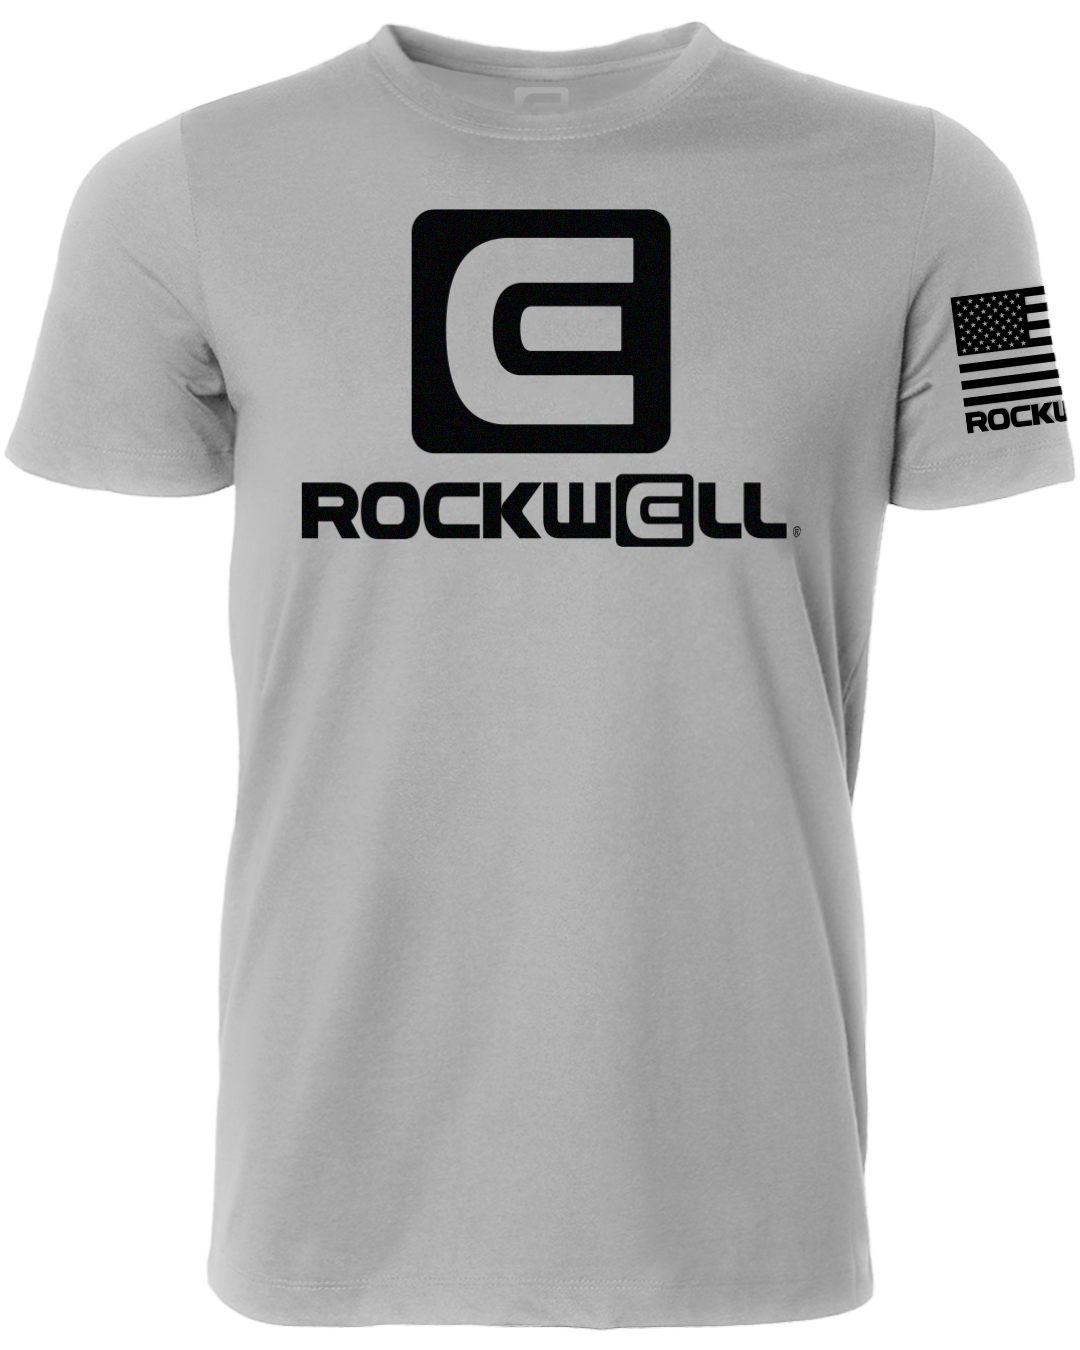 og gray shirt rockwell t shirt. rockwell flag logo on left sleeve